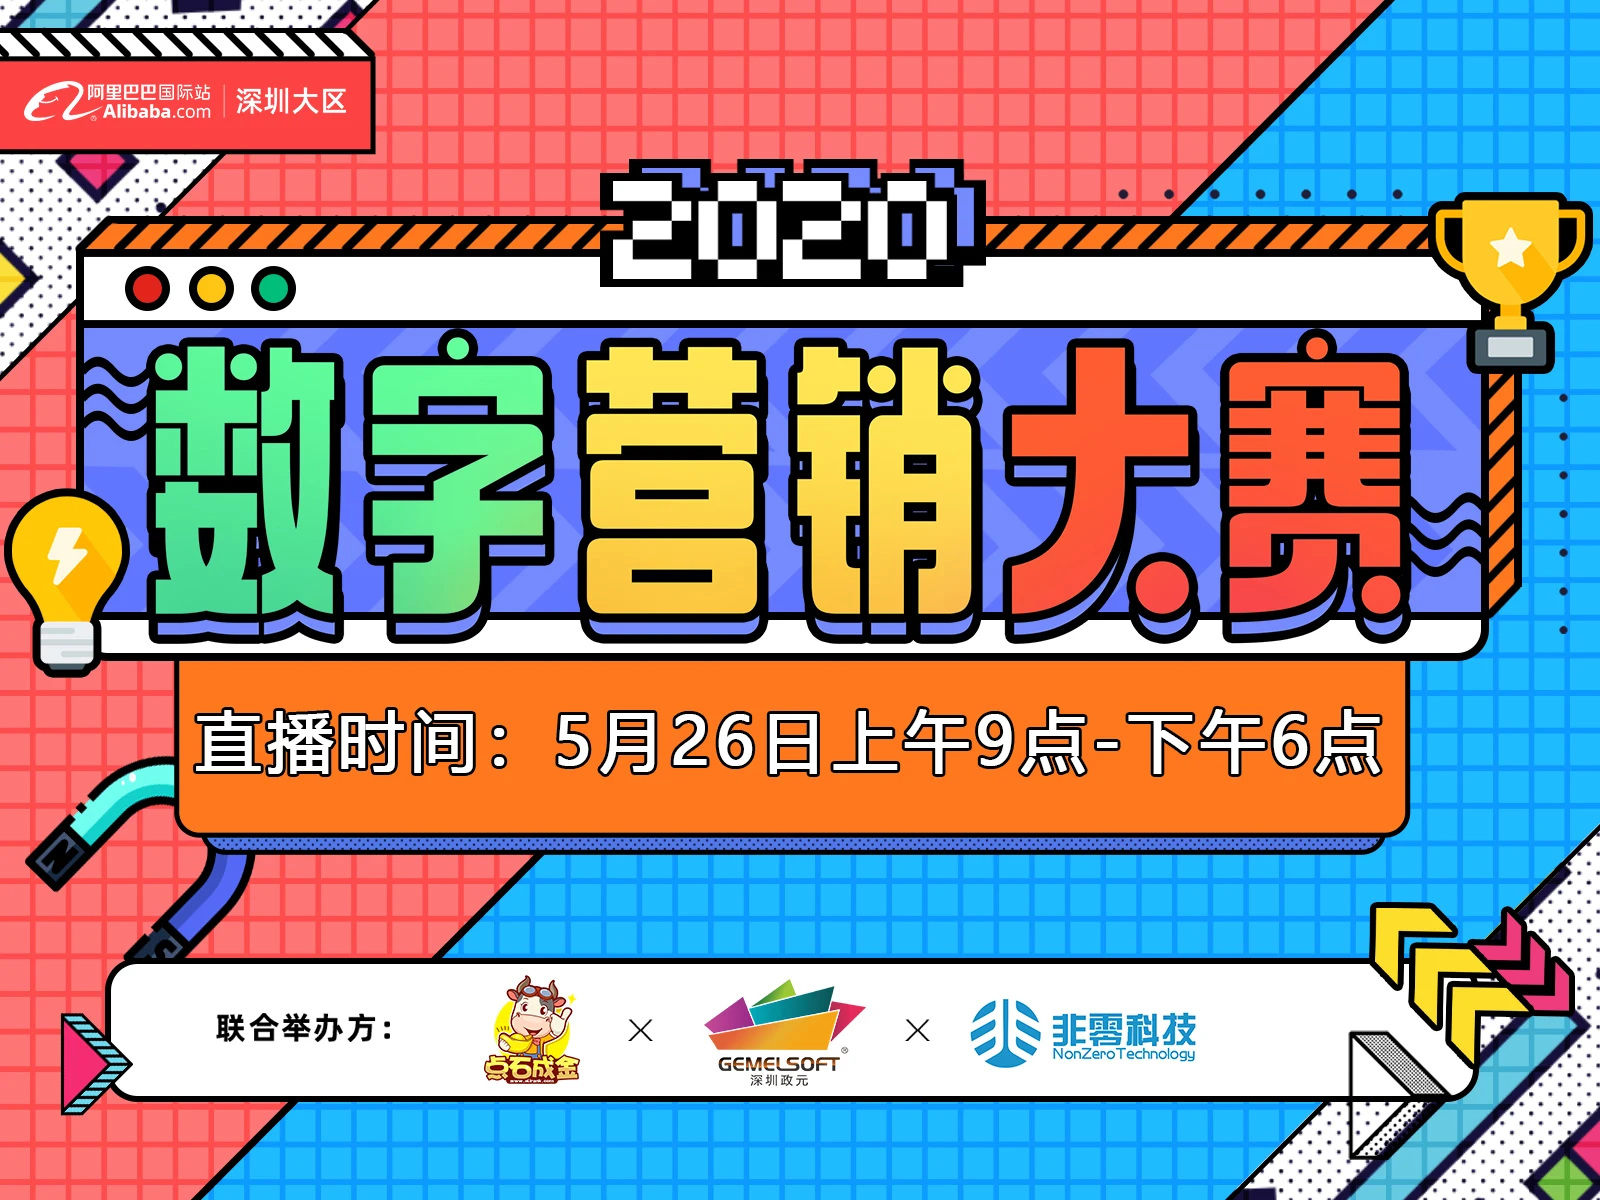 【2020数字营销大赛】深圳大区 龙华区域决赛